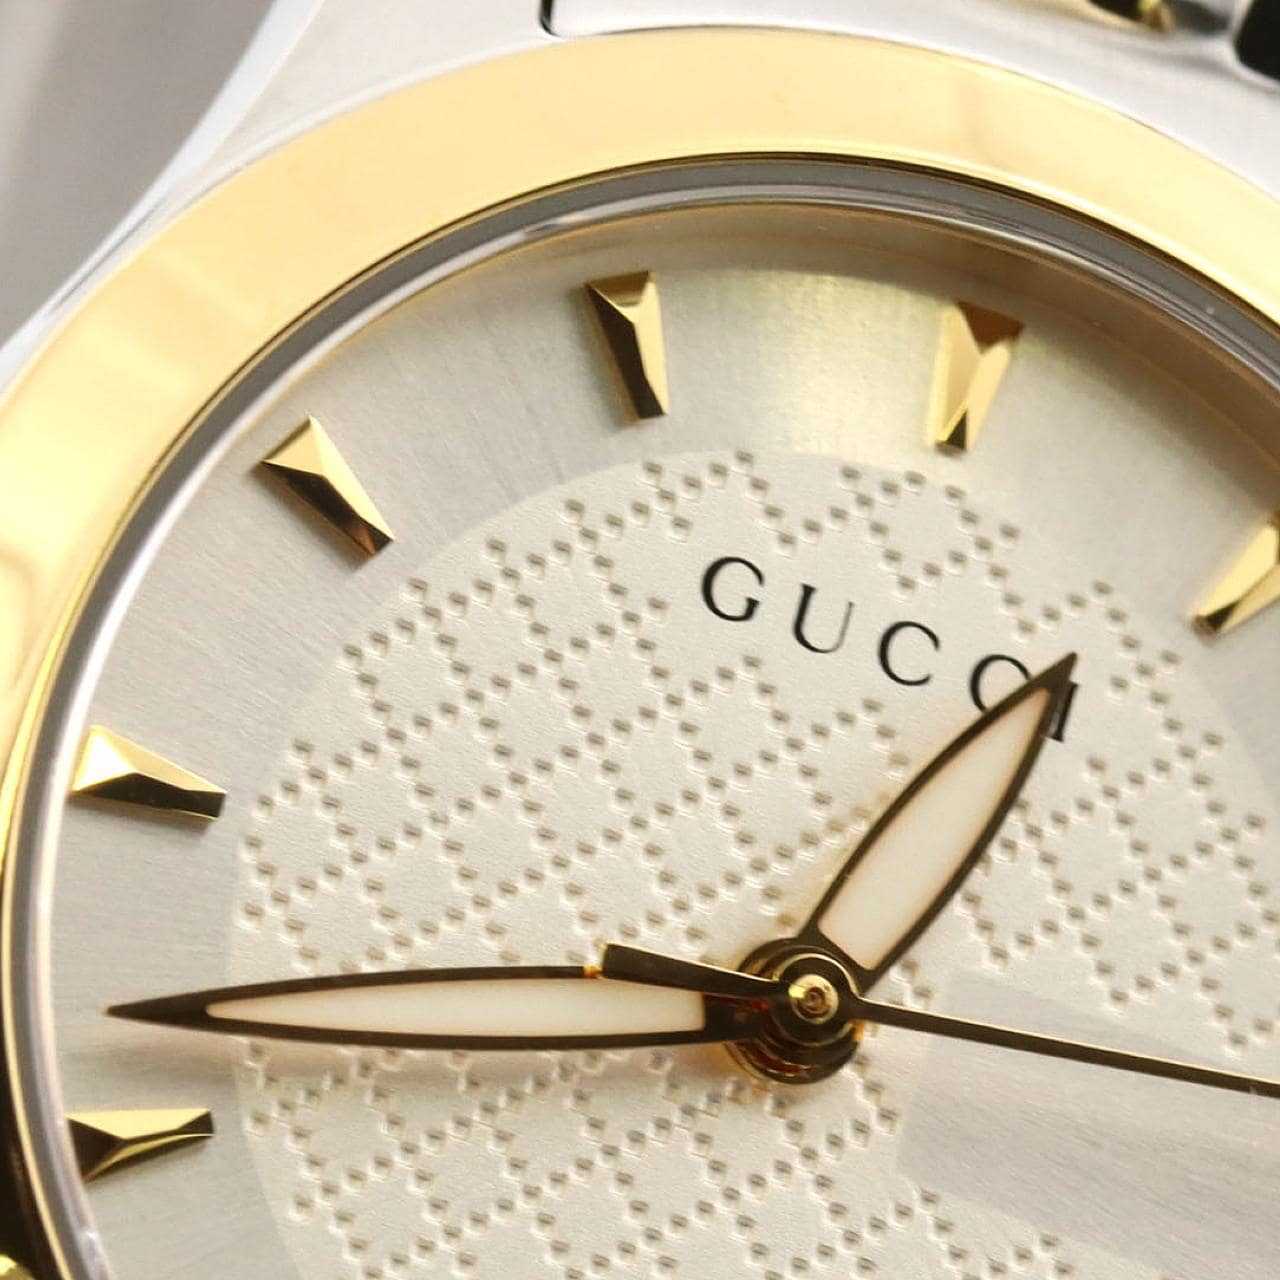 [BRAND NEW] Gucci G Timeless Combi 126.5/YA126511 SSxGP Quartz